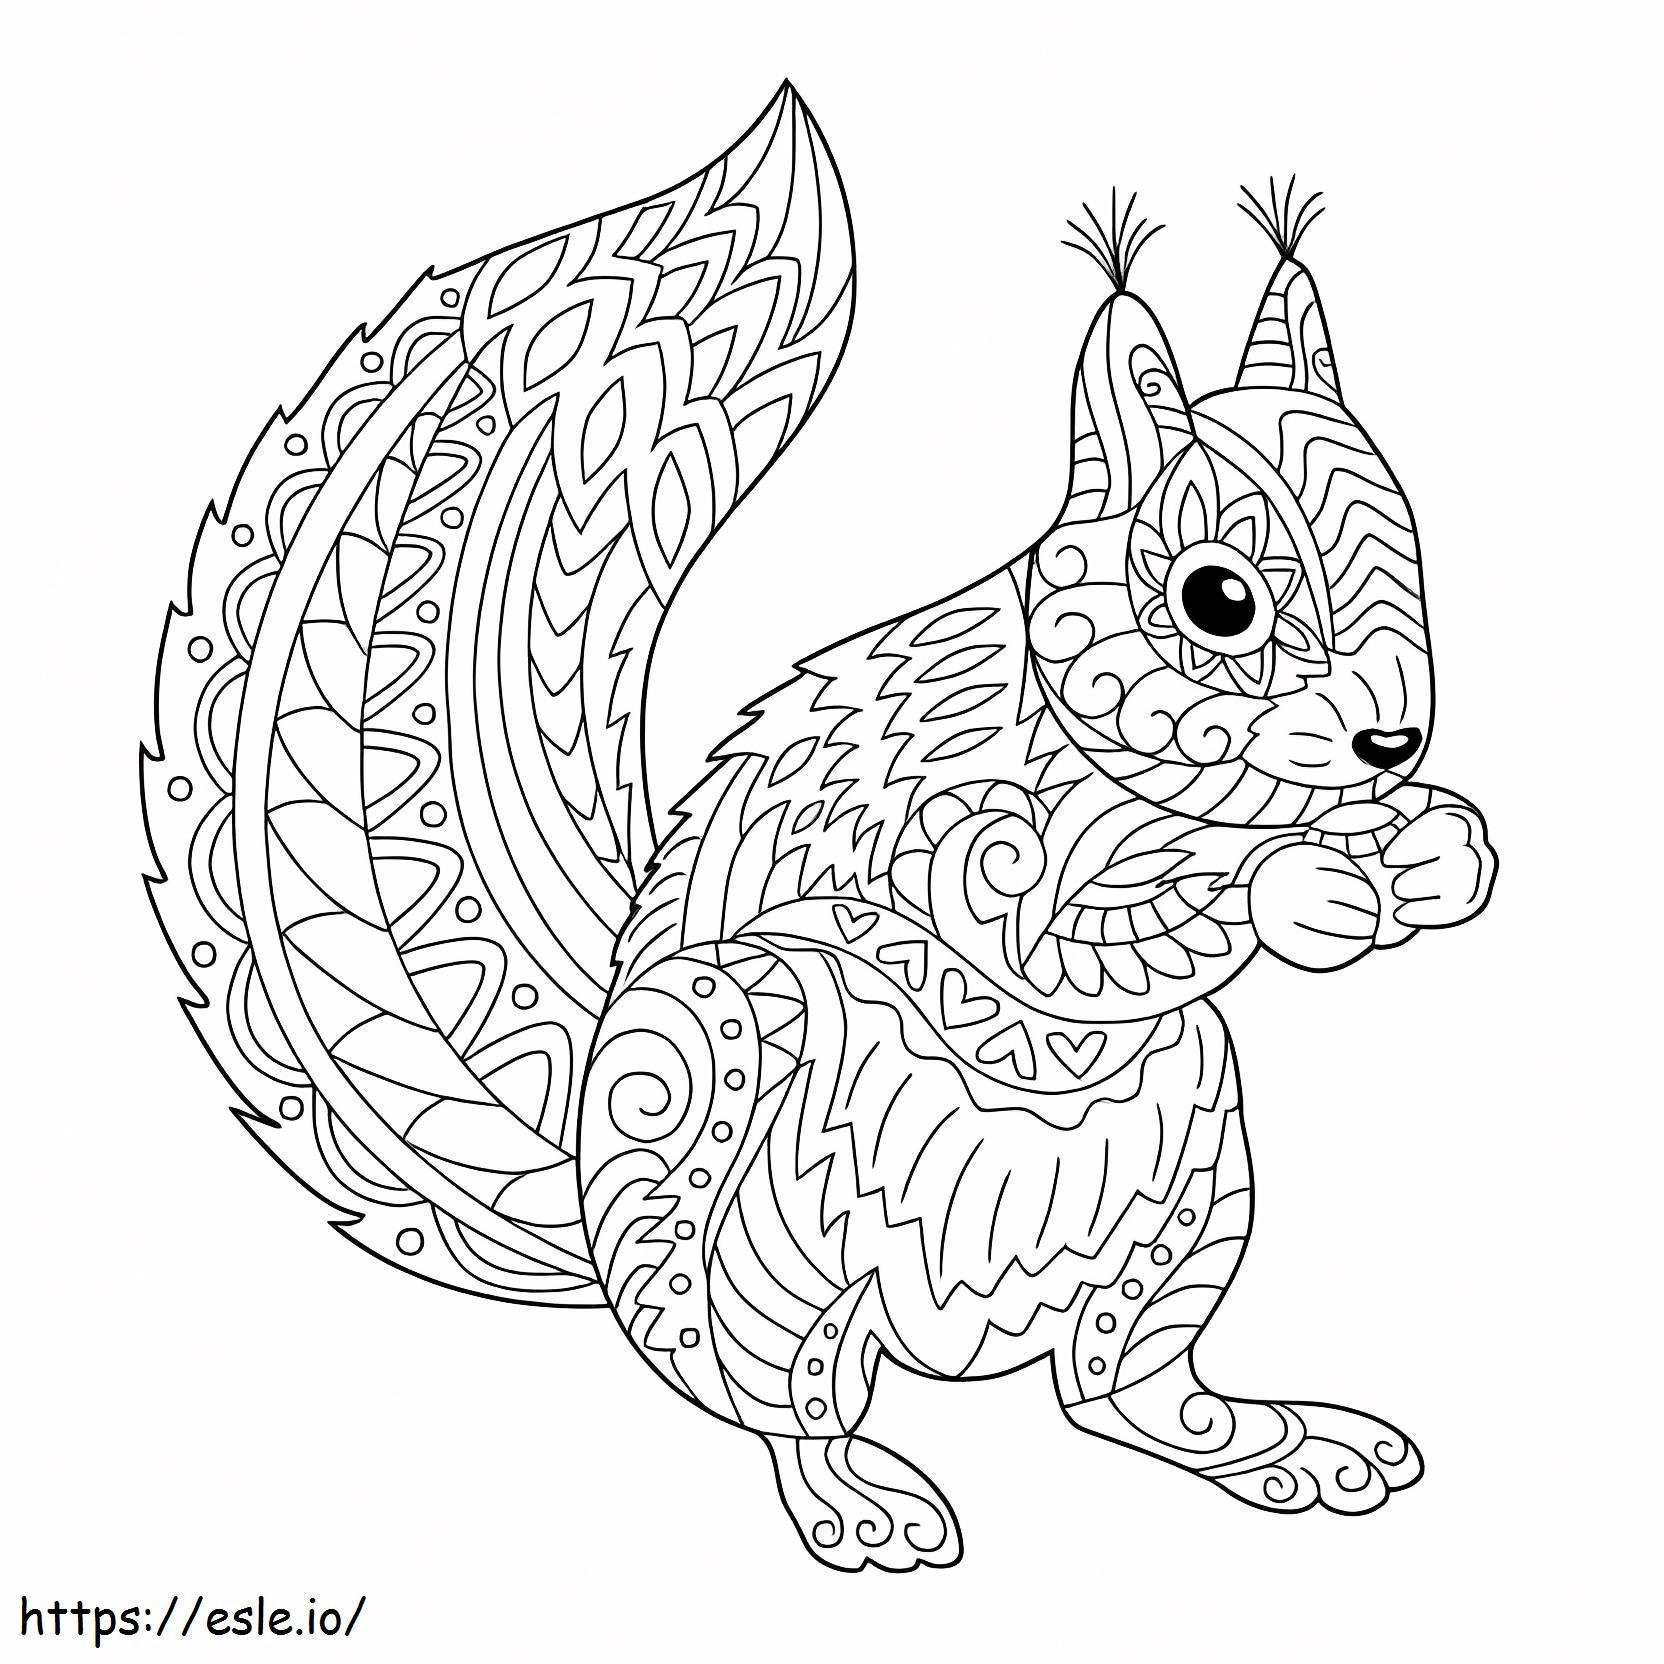 Mandala scoiattolo da colorare